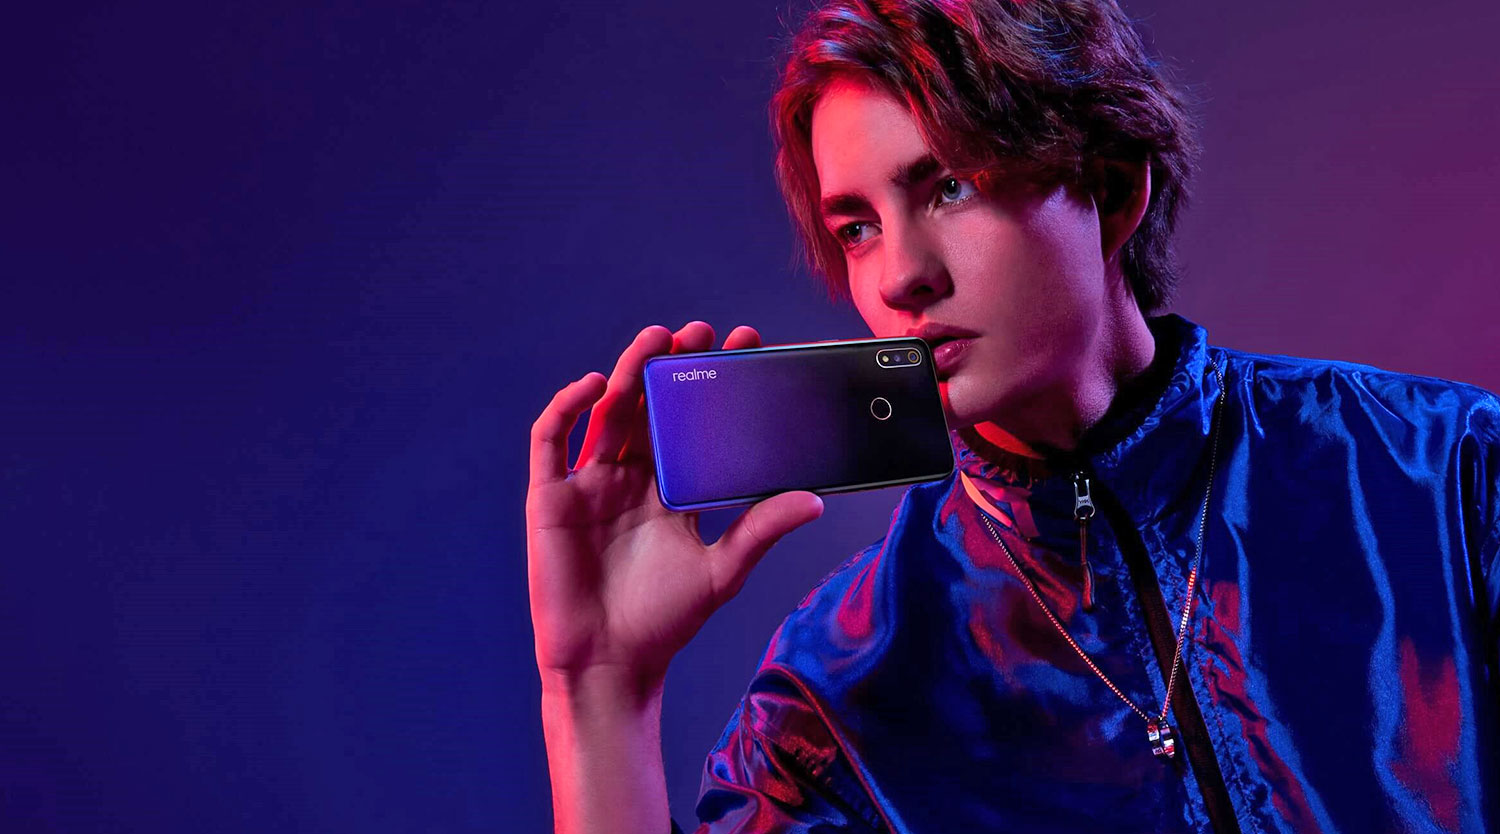 گوشی Realme 3 با هلیو پی ۷۰ (Helio P70) رسما معرفی شد